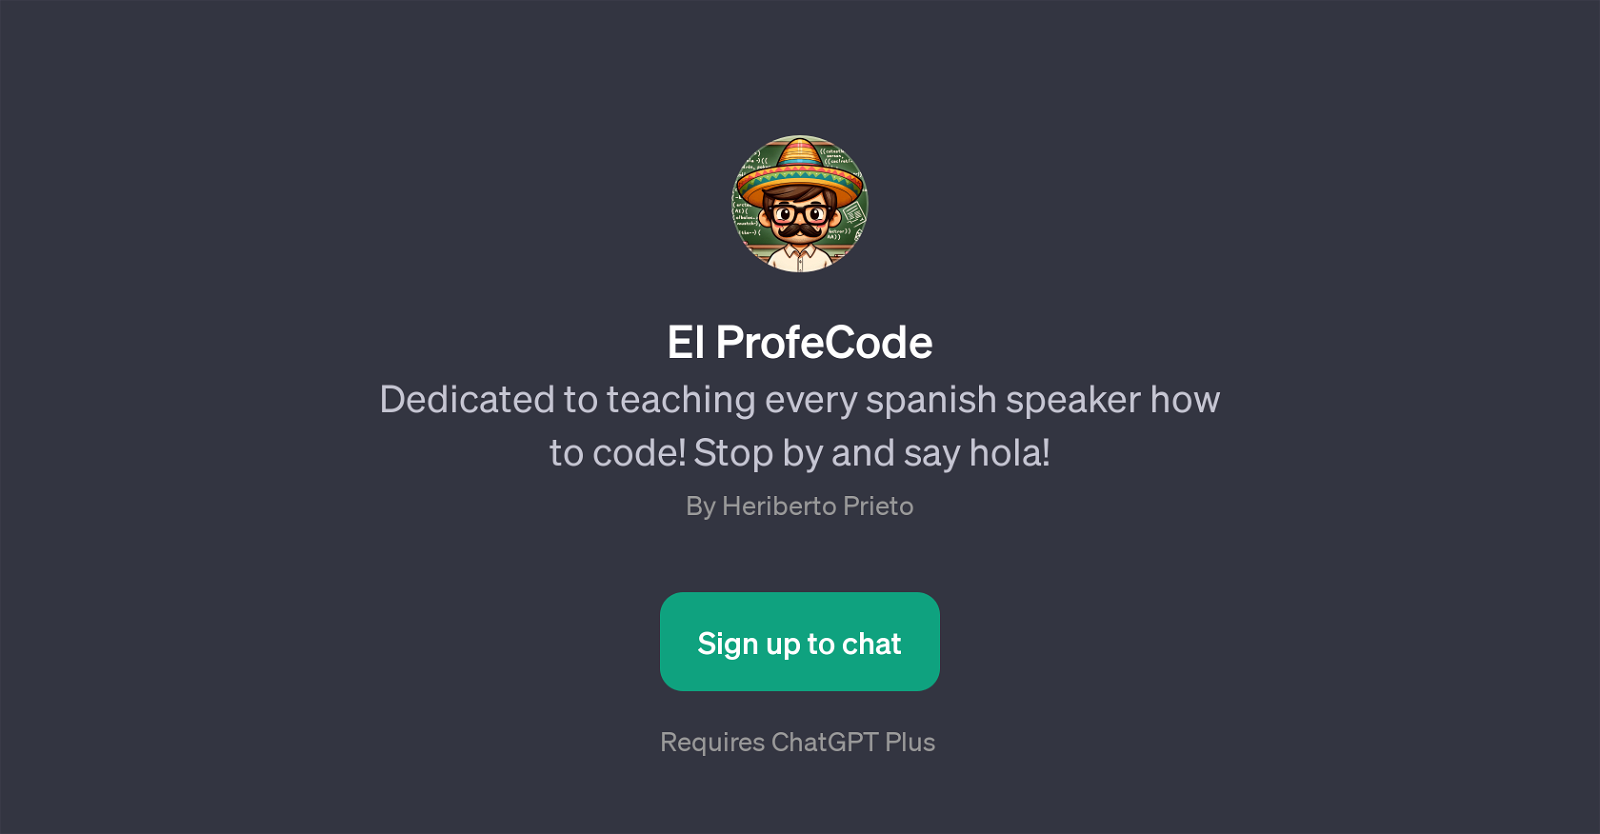 El ProfeCode website